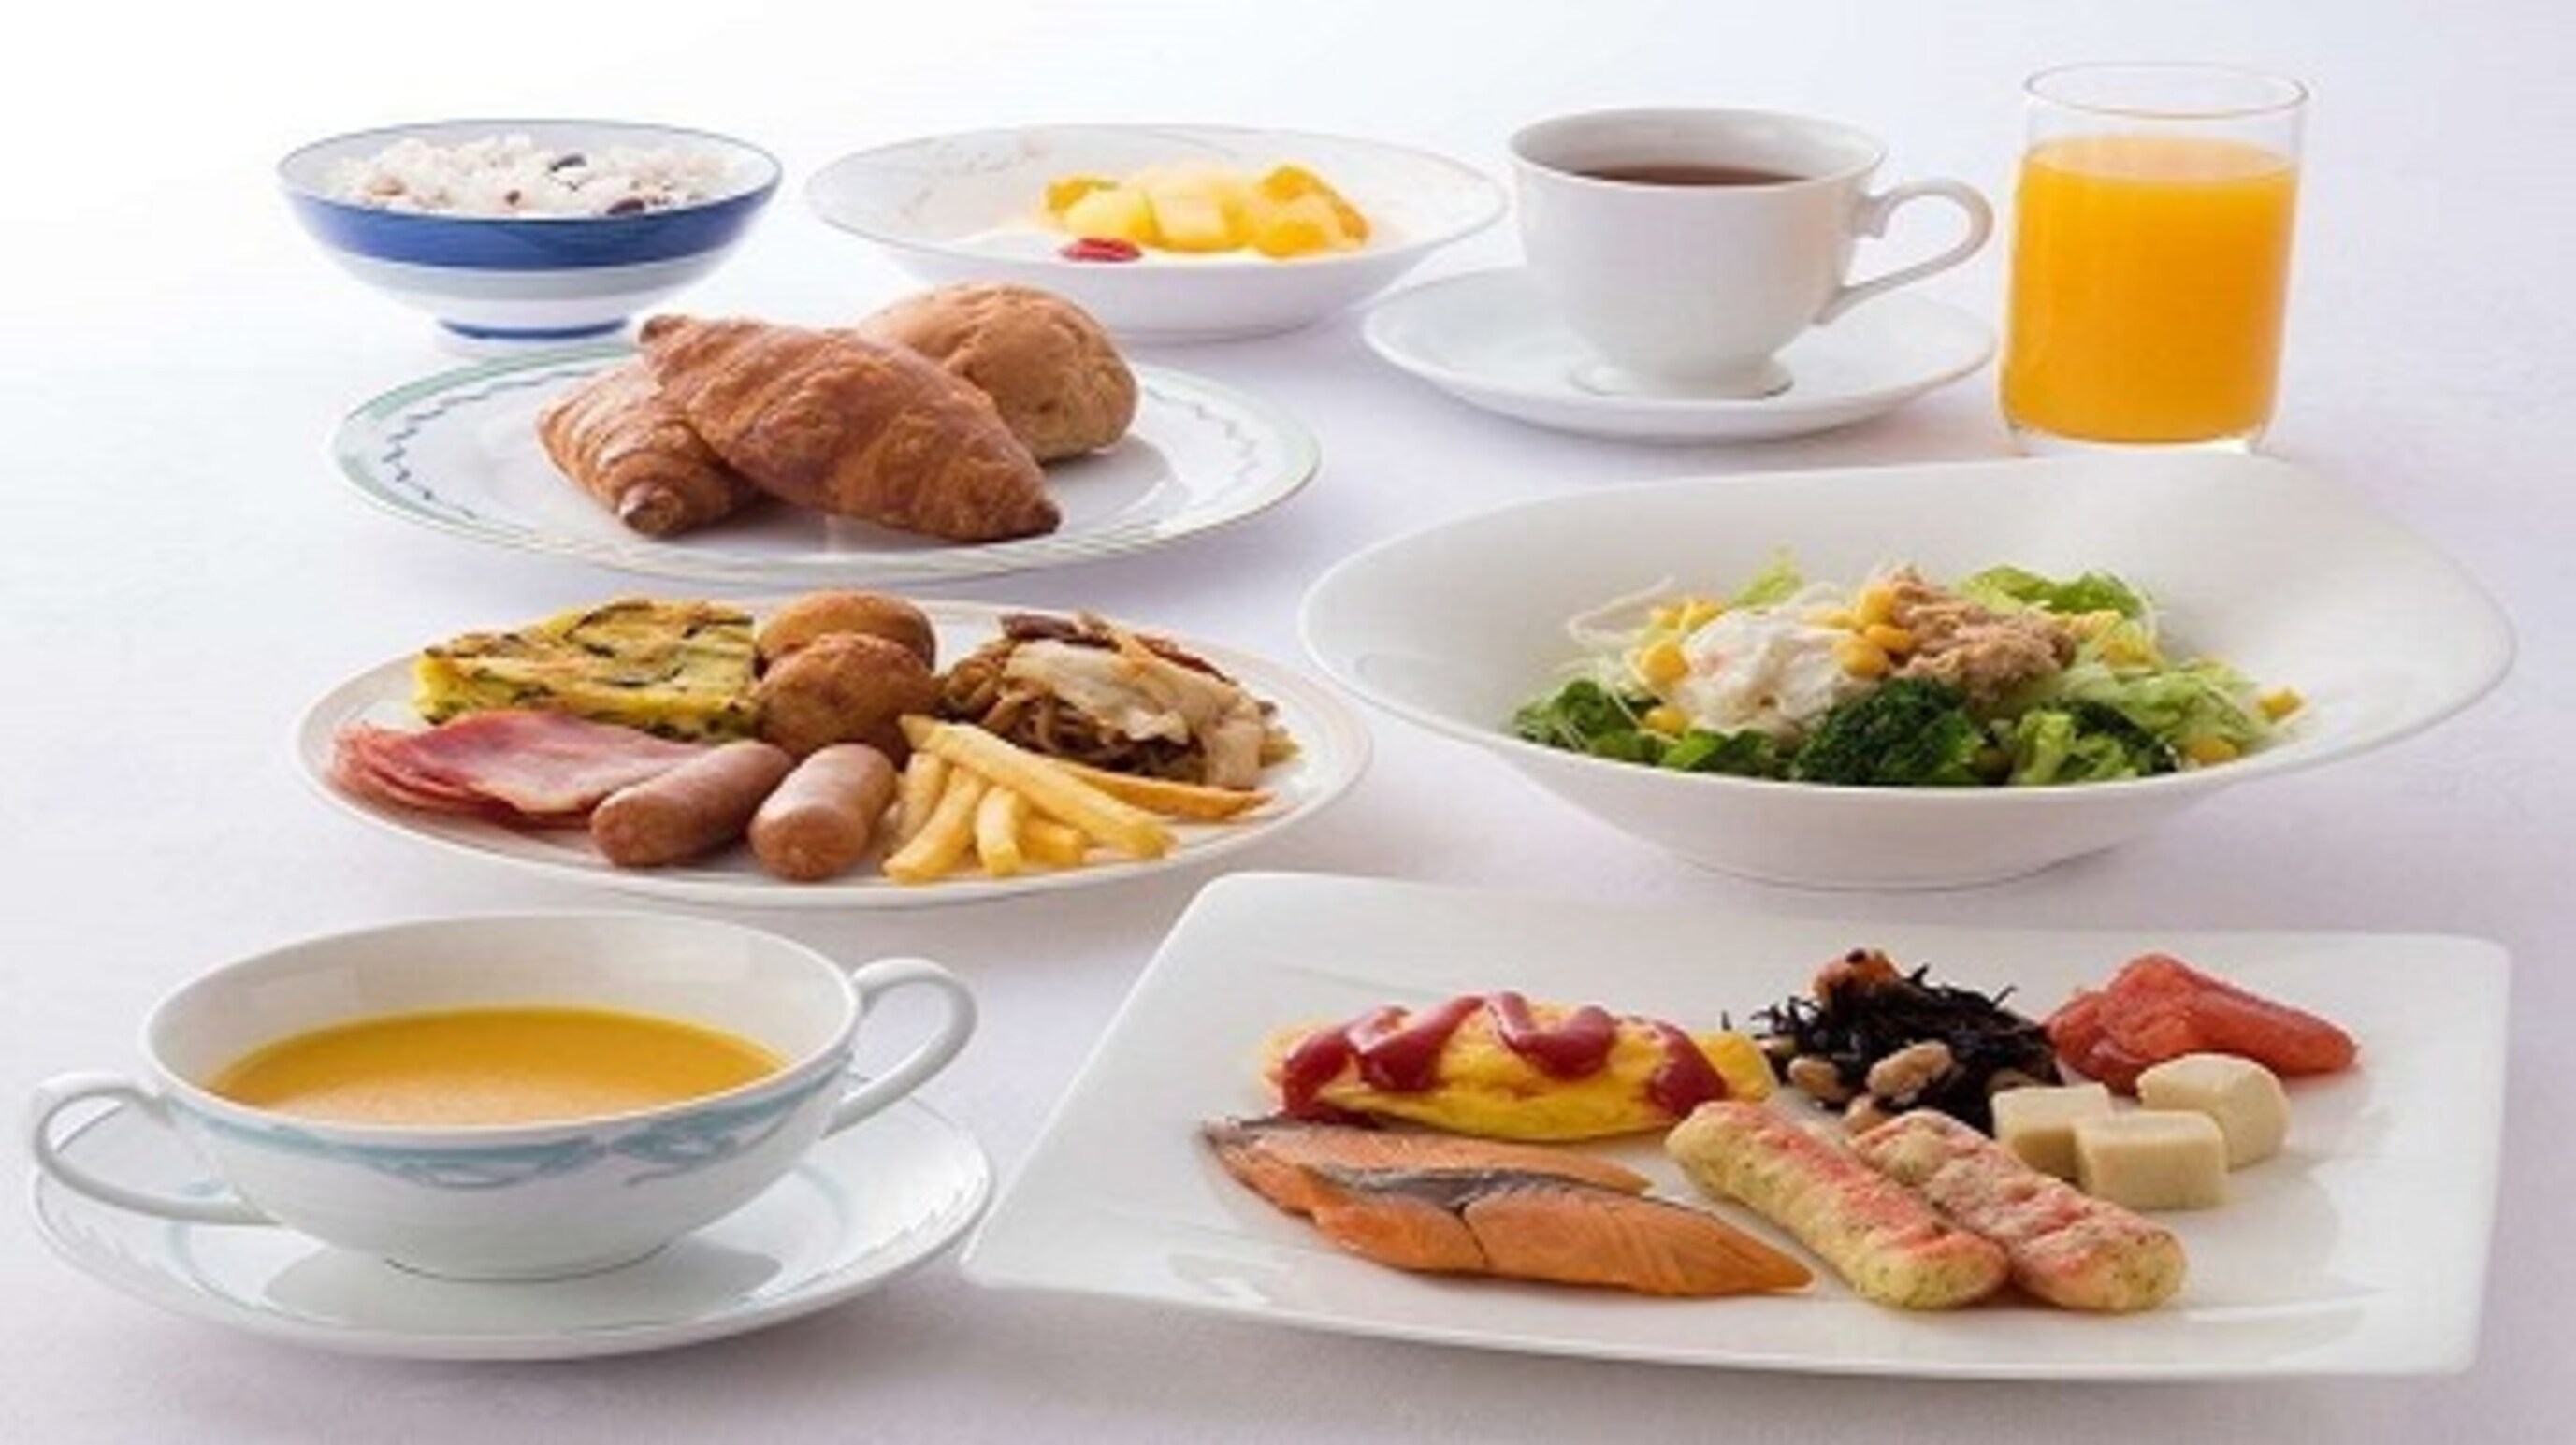 [Gambar sarapan] Contoh menu sarapan